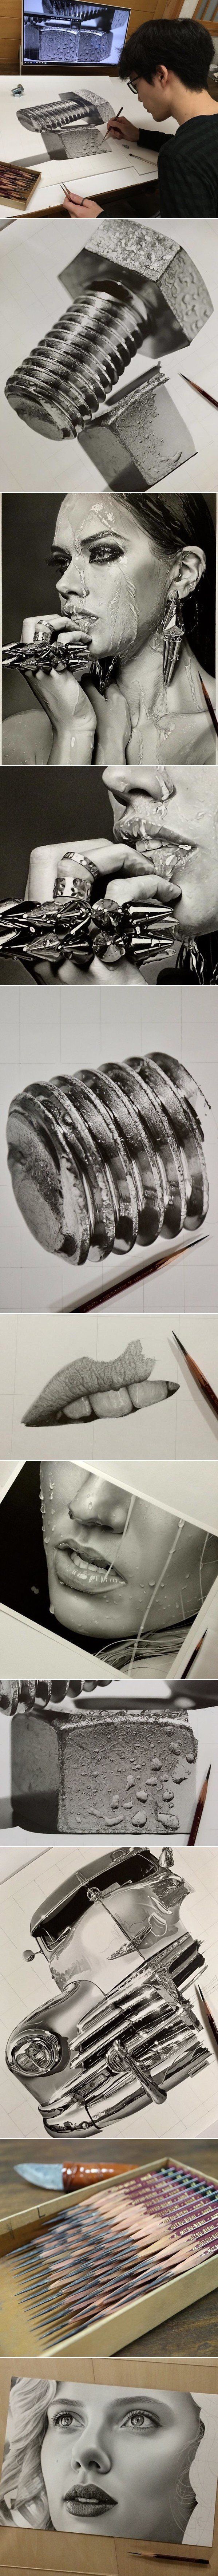 일본의 22세 화가가 연필로만 그린 작품